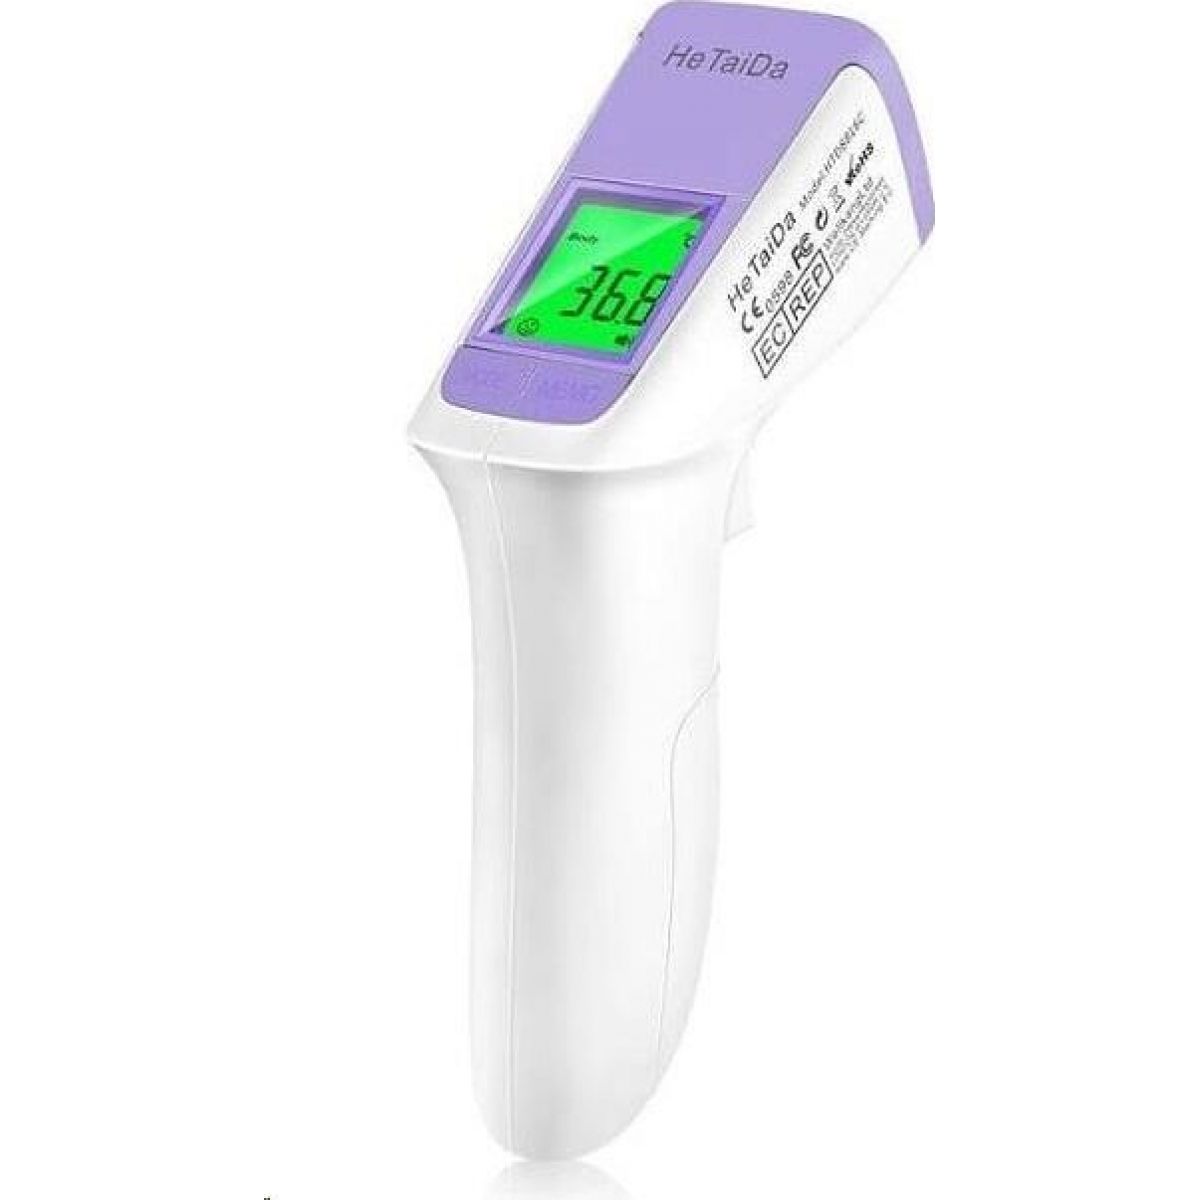 Thermometer Model 8816C- Bezdotykový zdravotní teploměr